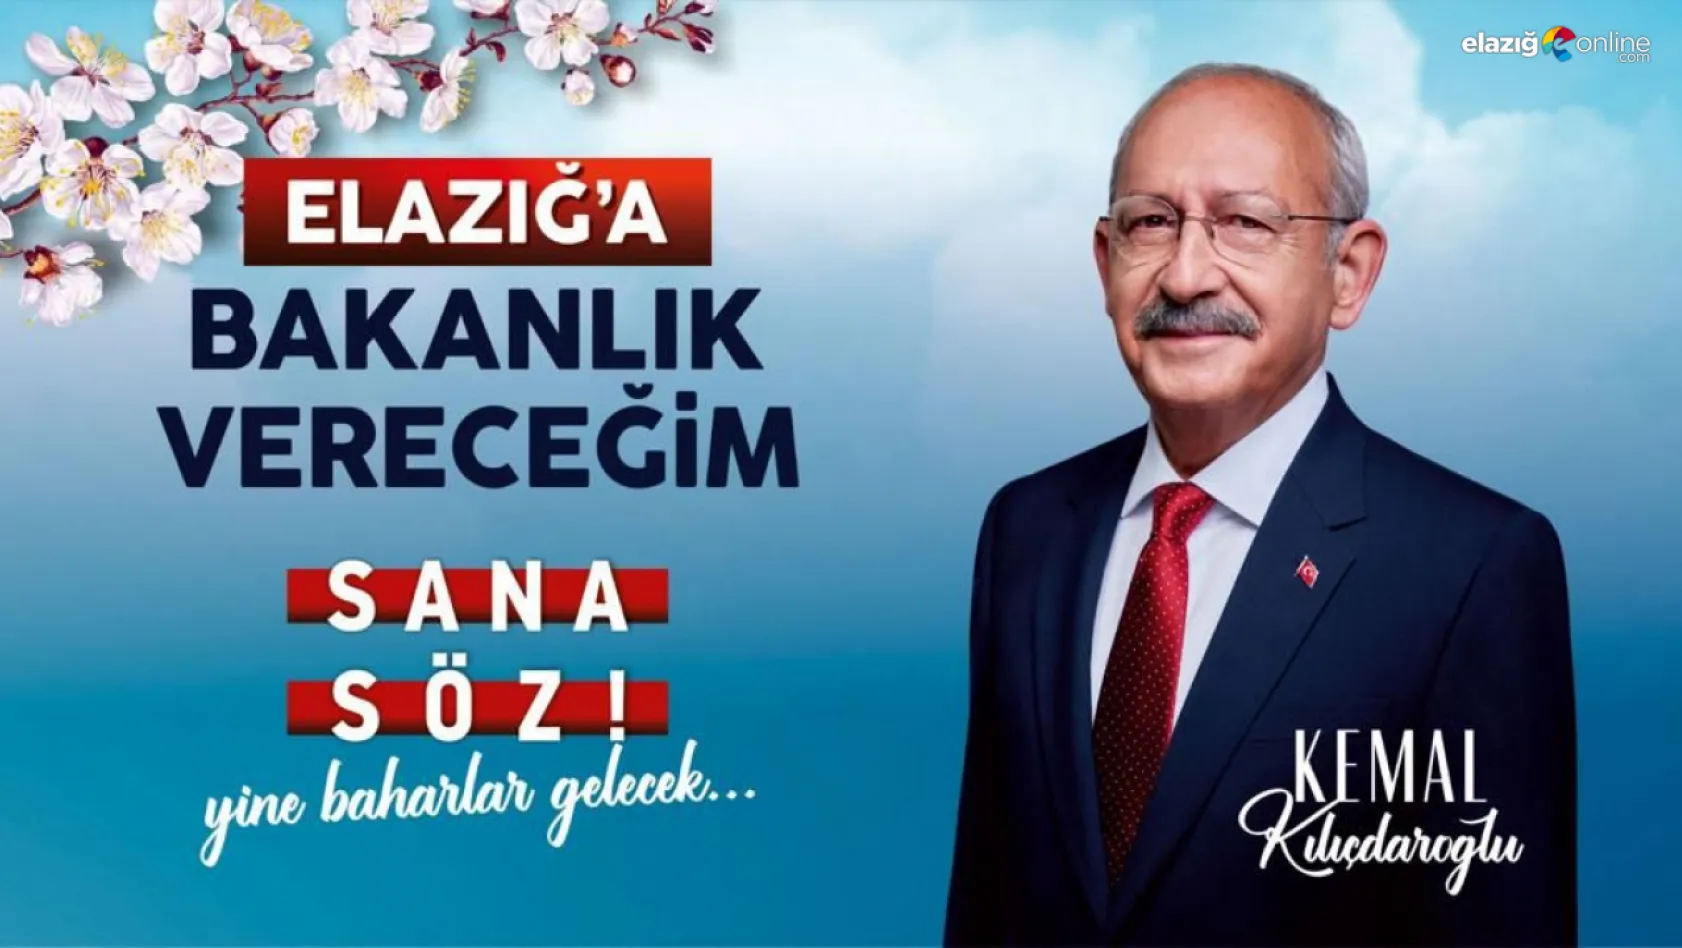 CHP Genel Başkanı Kılıçdaroğlu 'Elazığ'a Bakanlık' sözünü yineledi!